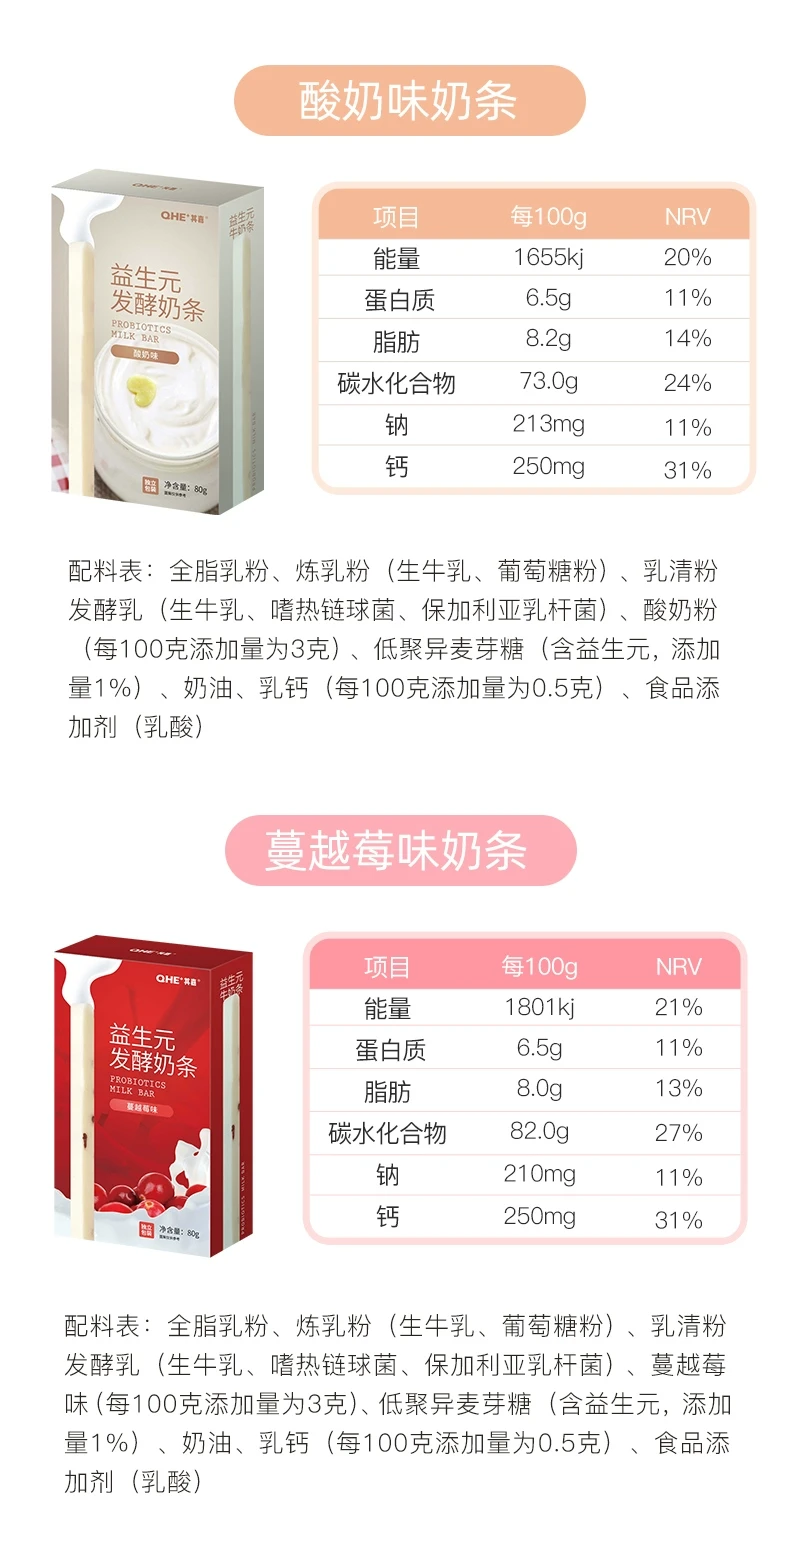 中国 其嘉 益生元牛奶条 酸奶味 80克 嚼着吃的原味酸奶